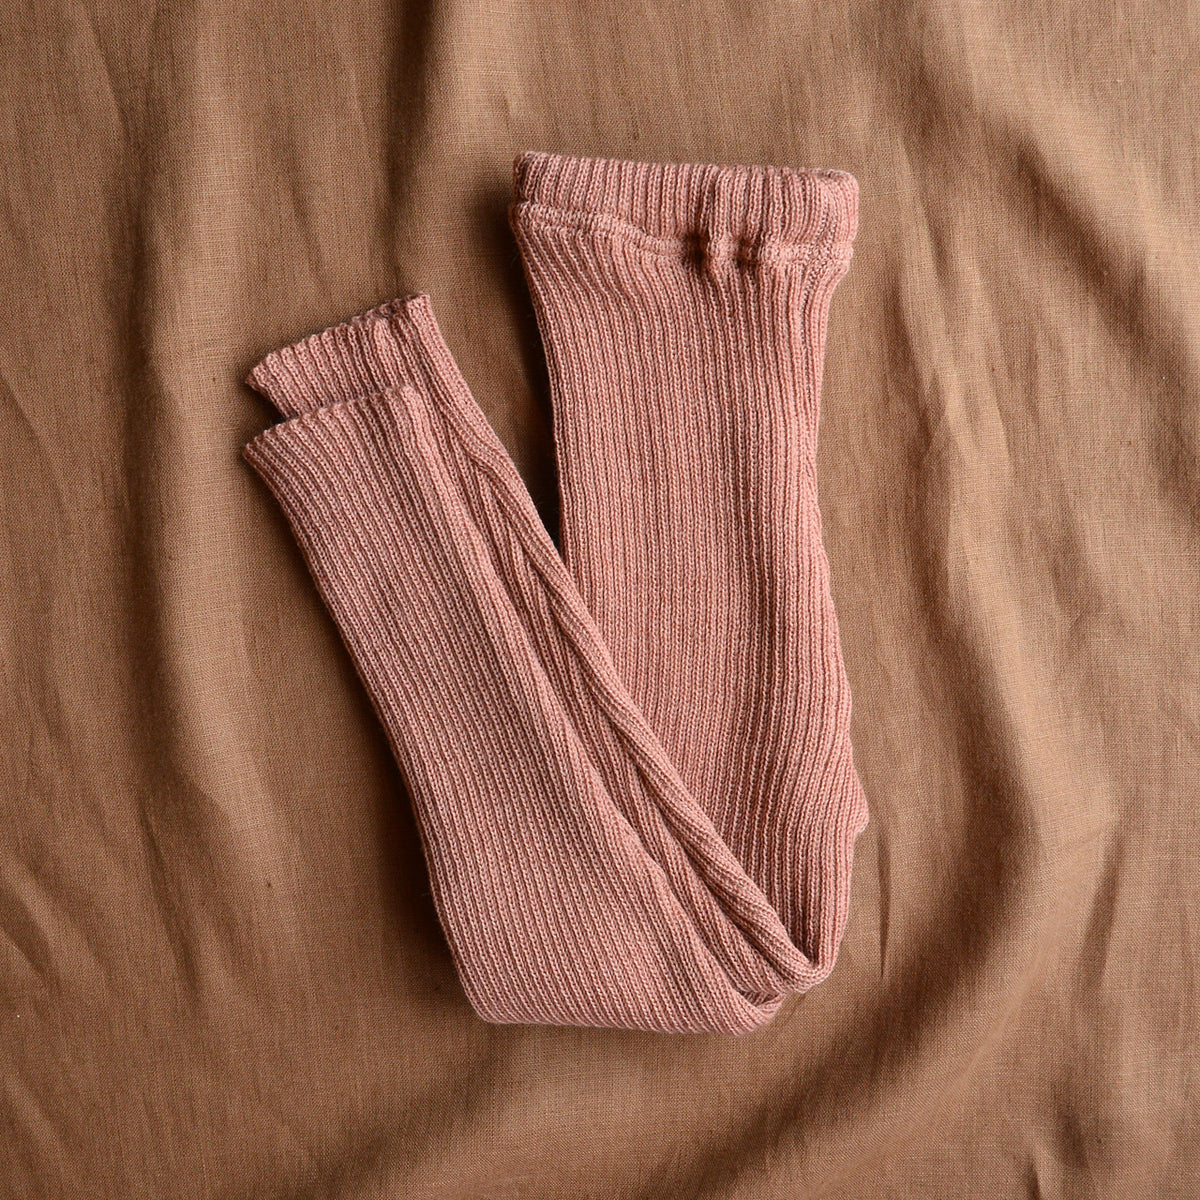 Merino Wool Leggings and Pants by Disana - Woollykins